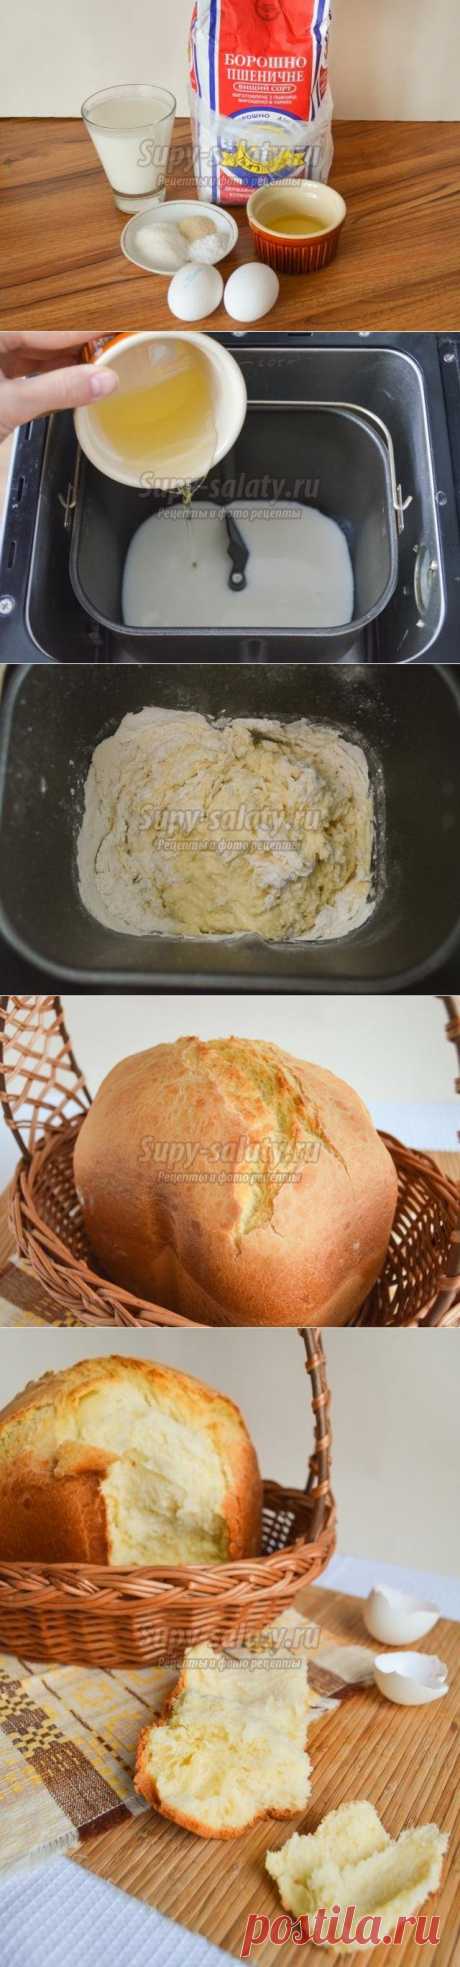 Воздушный яичный хлеб в хлебопечке. Рецепт с пошаговыми фото